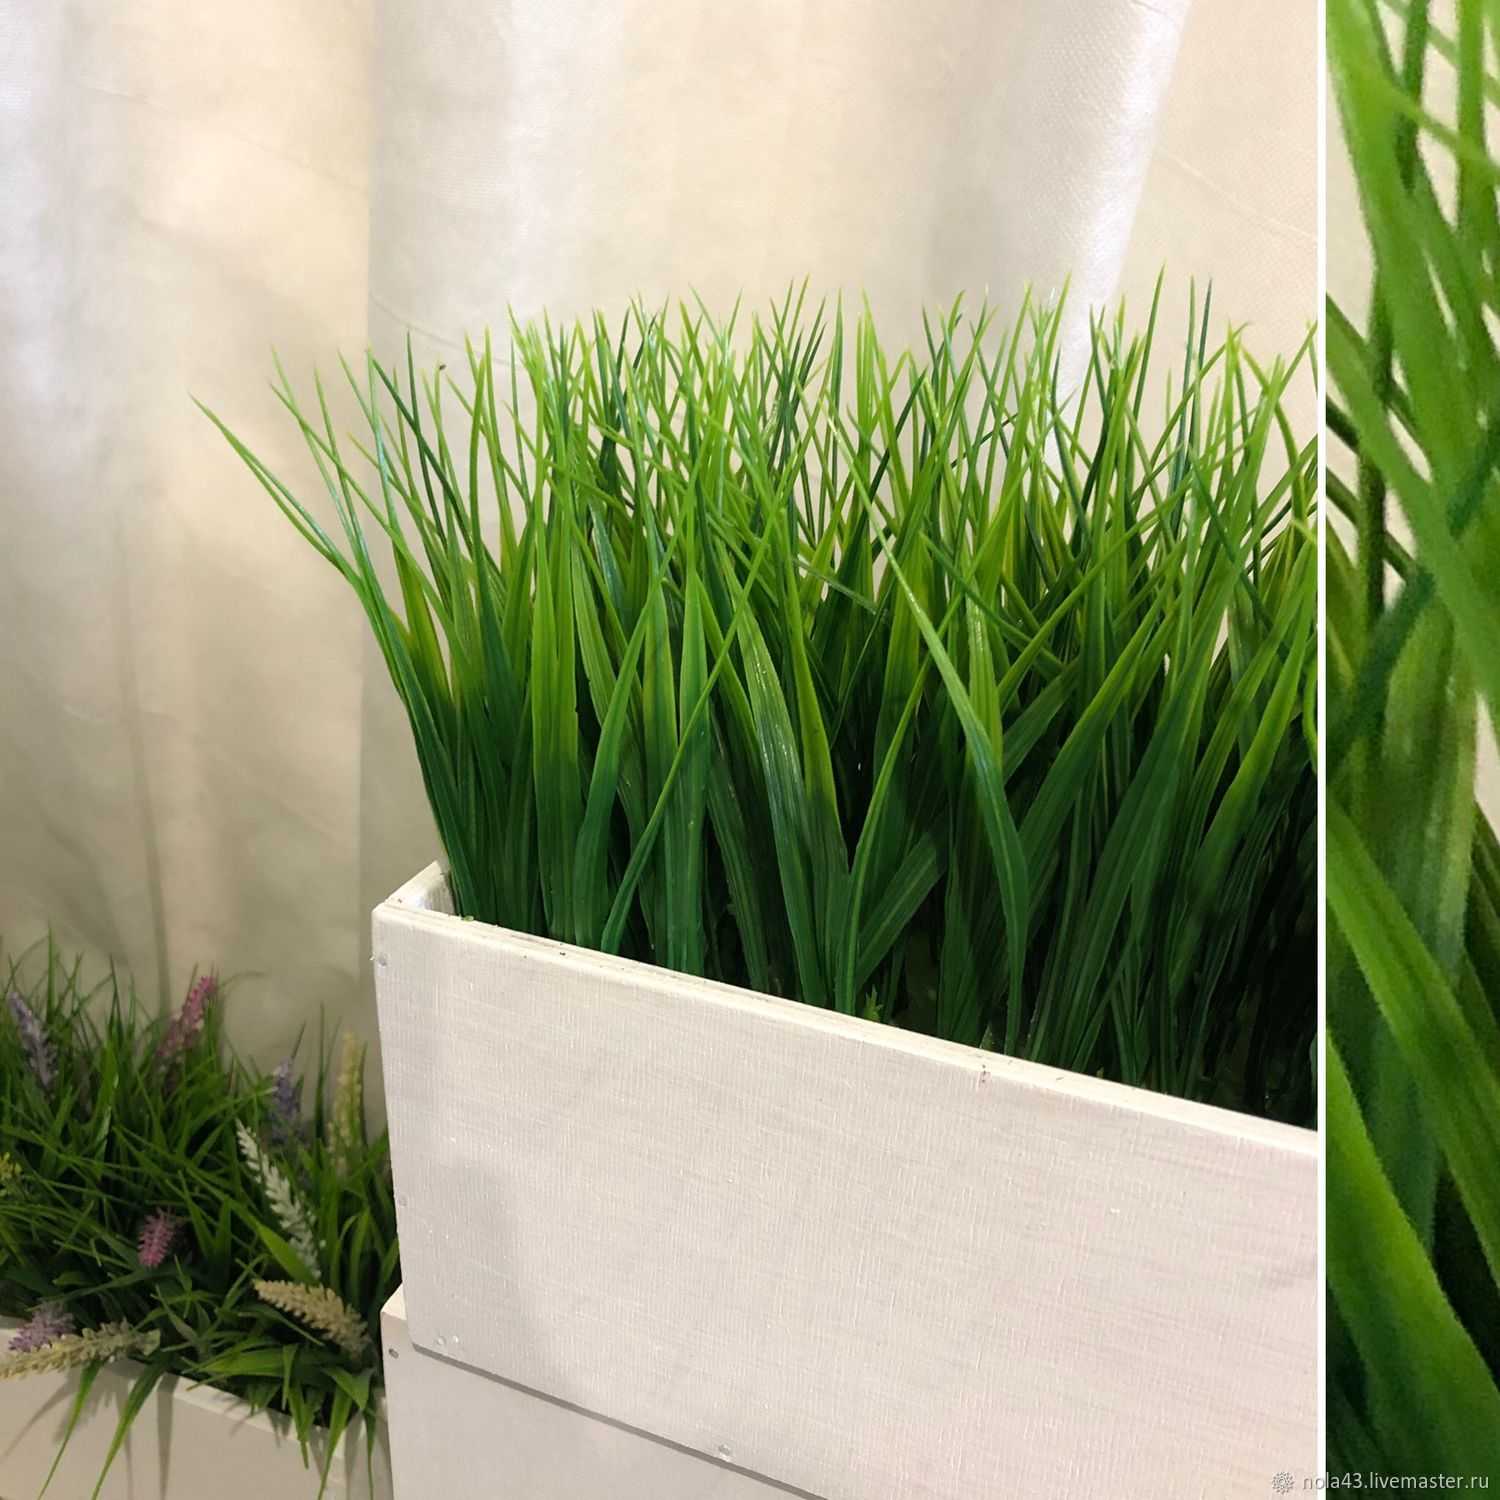 Искусственная трава в горшке, декоративная зеленая травка в горшках для интерьера квартиры и дома